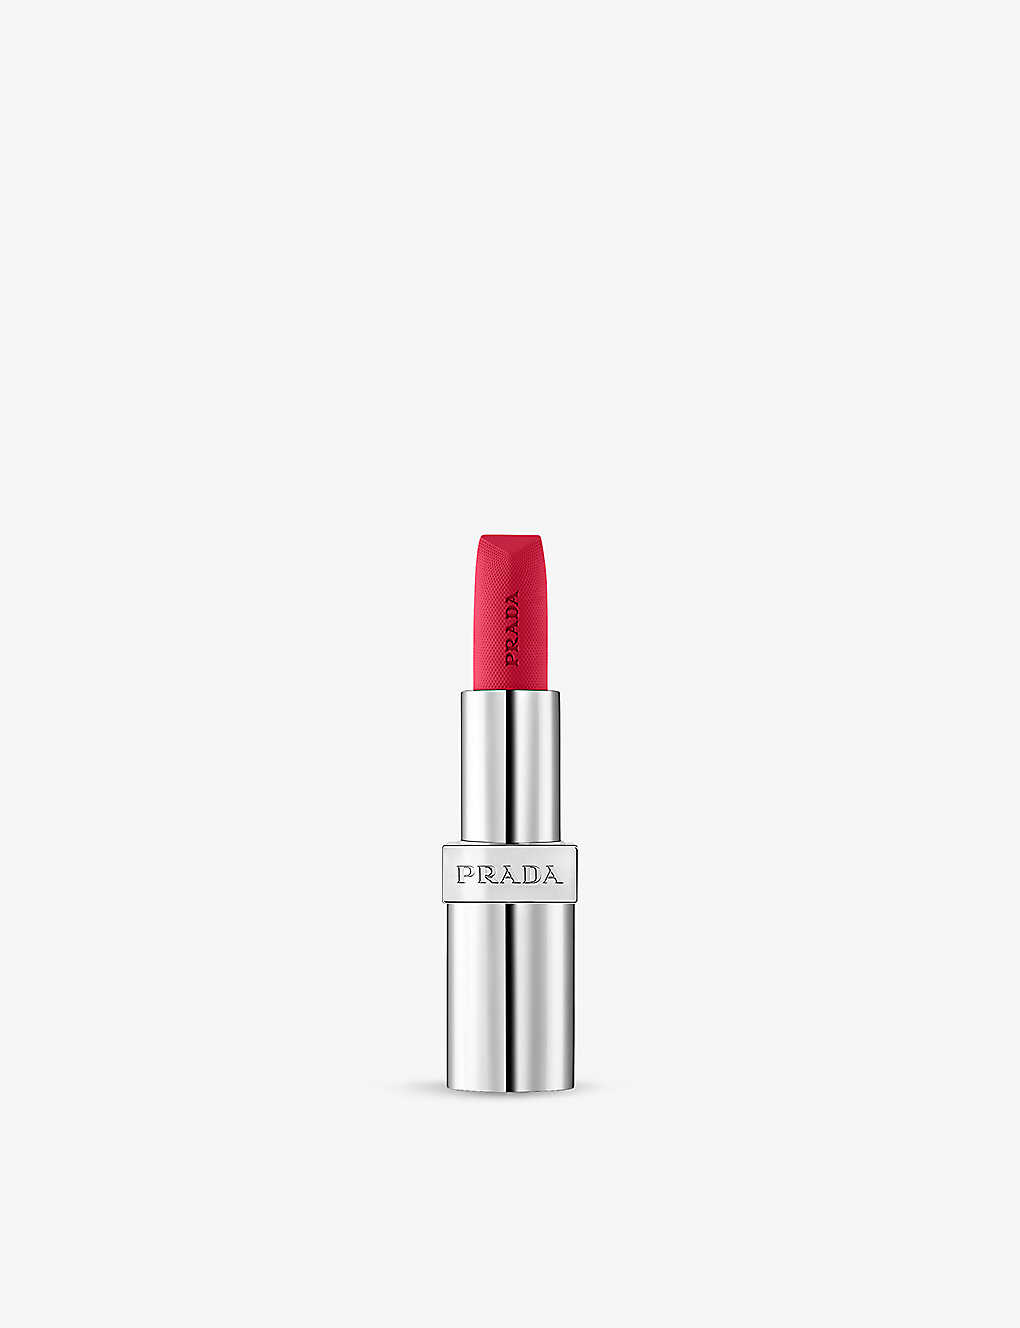 Prada Soft Matte Monochrome Refillable Lipstick 3.8g In Pourpre